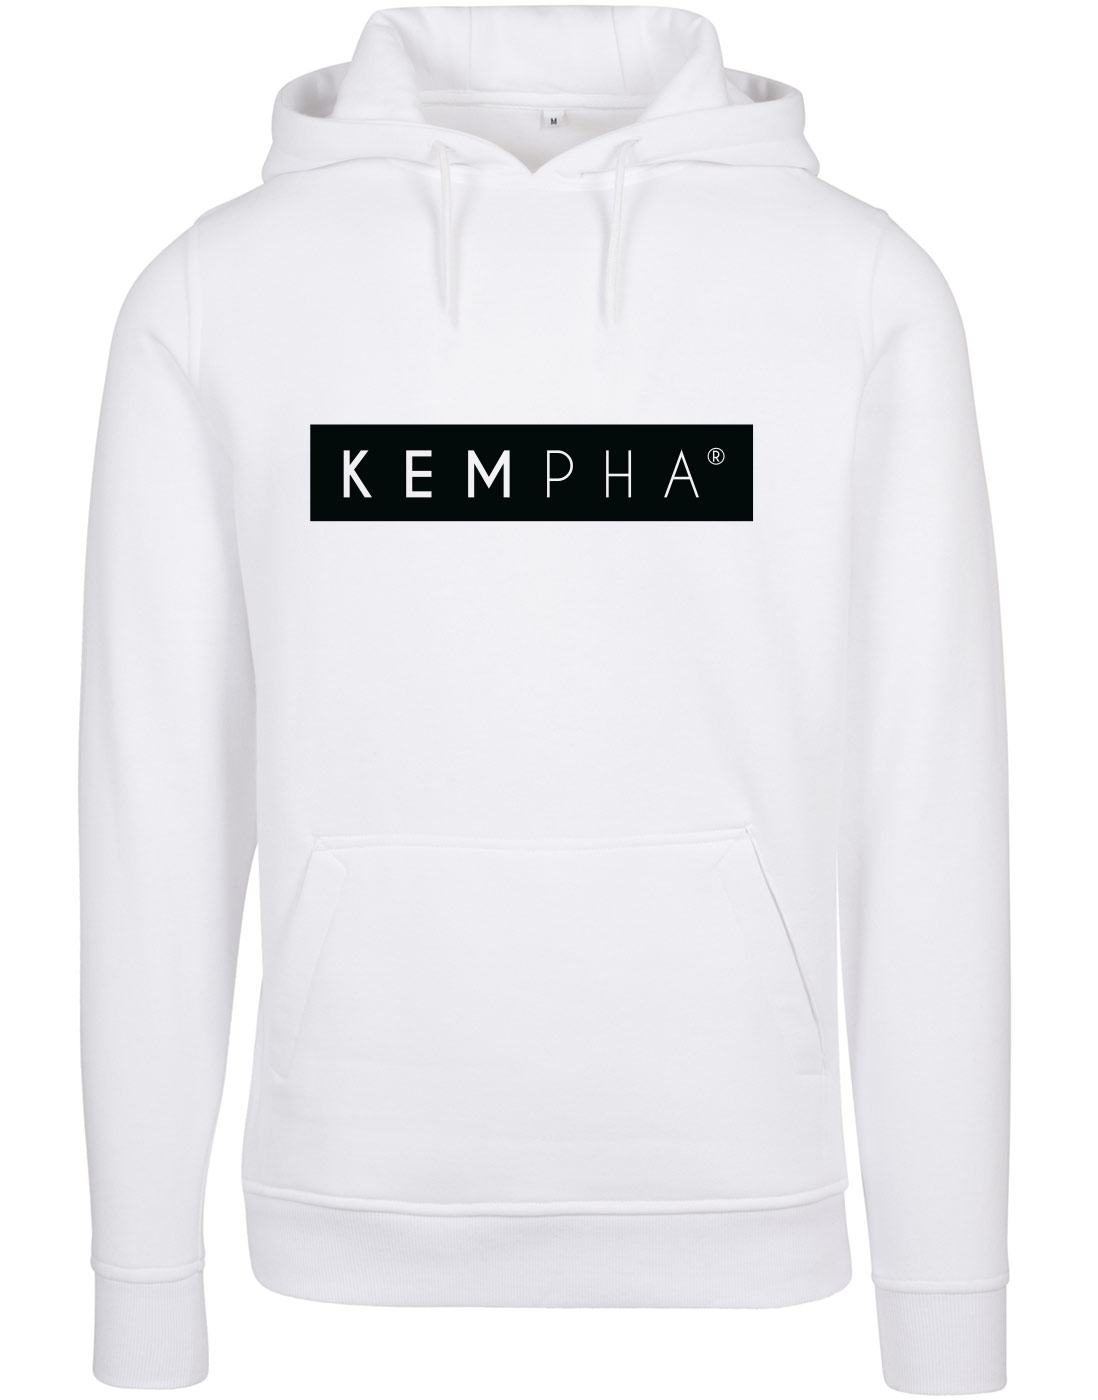 Kempha Premium Hoodie schwarz auf wei